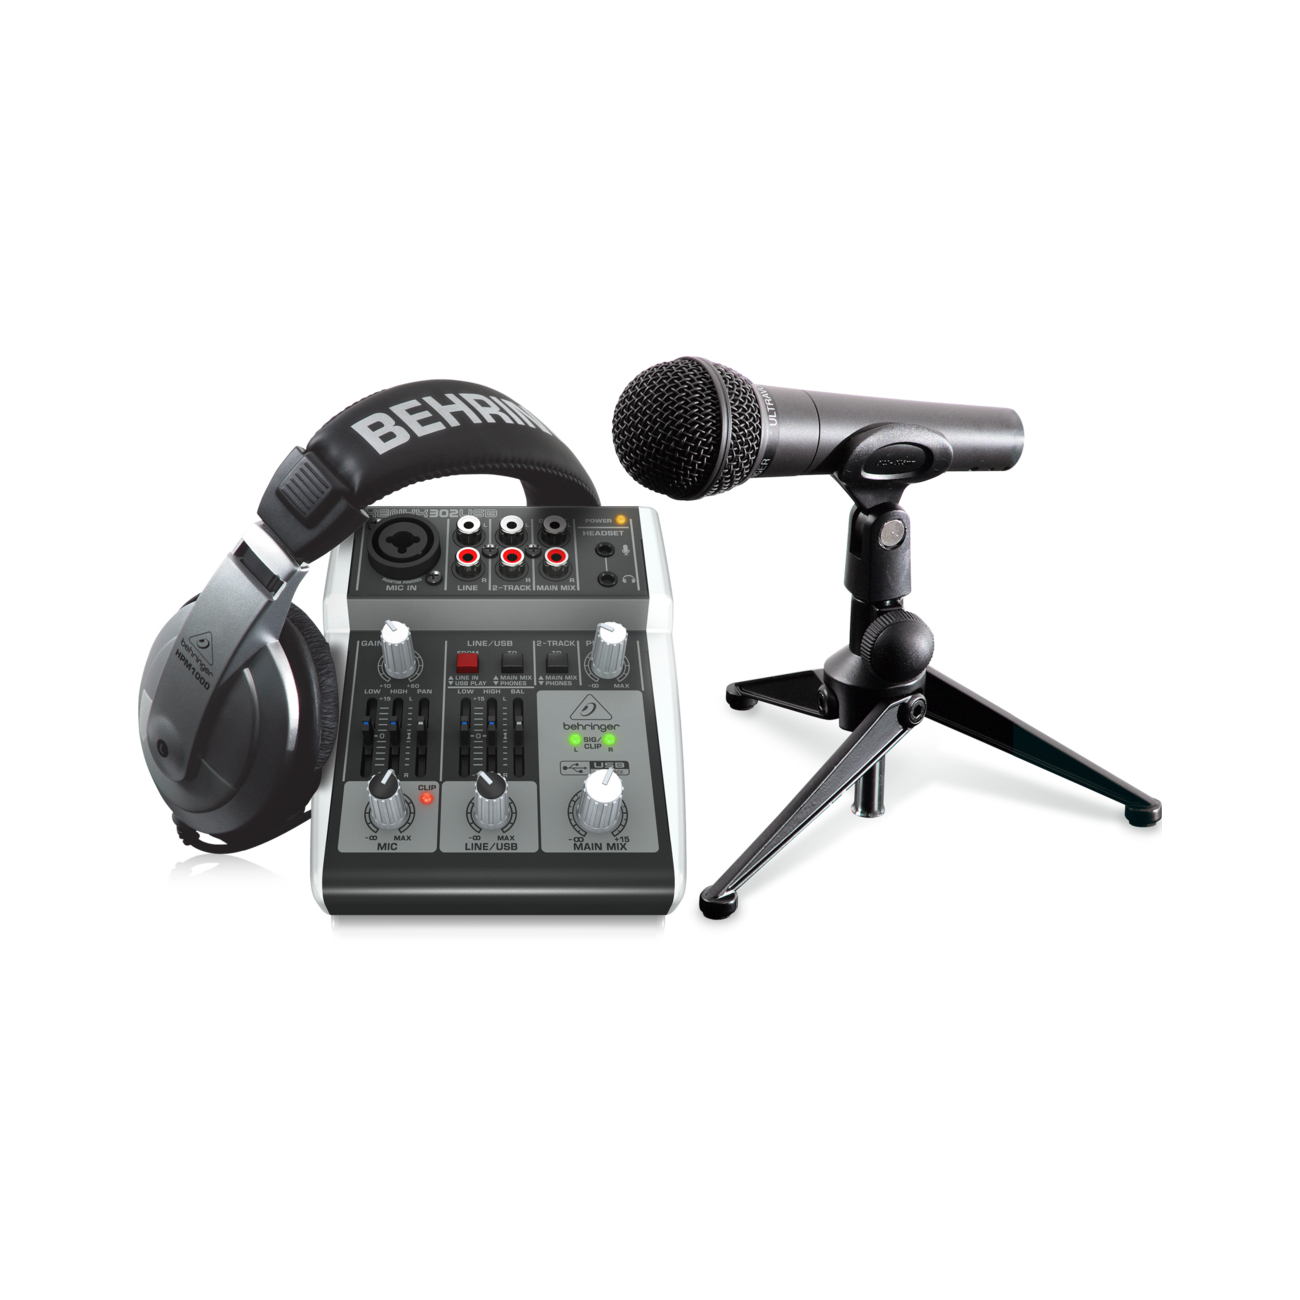 Портастудии Behringer Podcastudio 2 USB студийные микрофоны behringer c 3